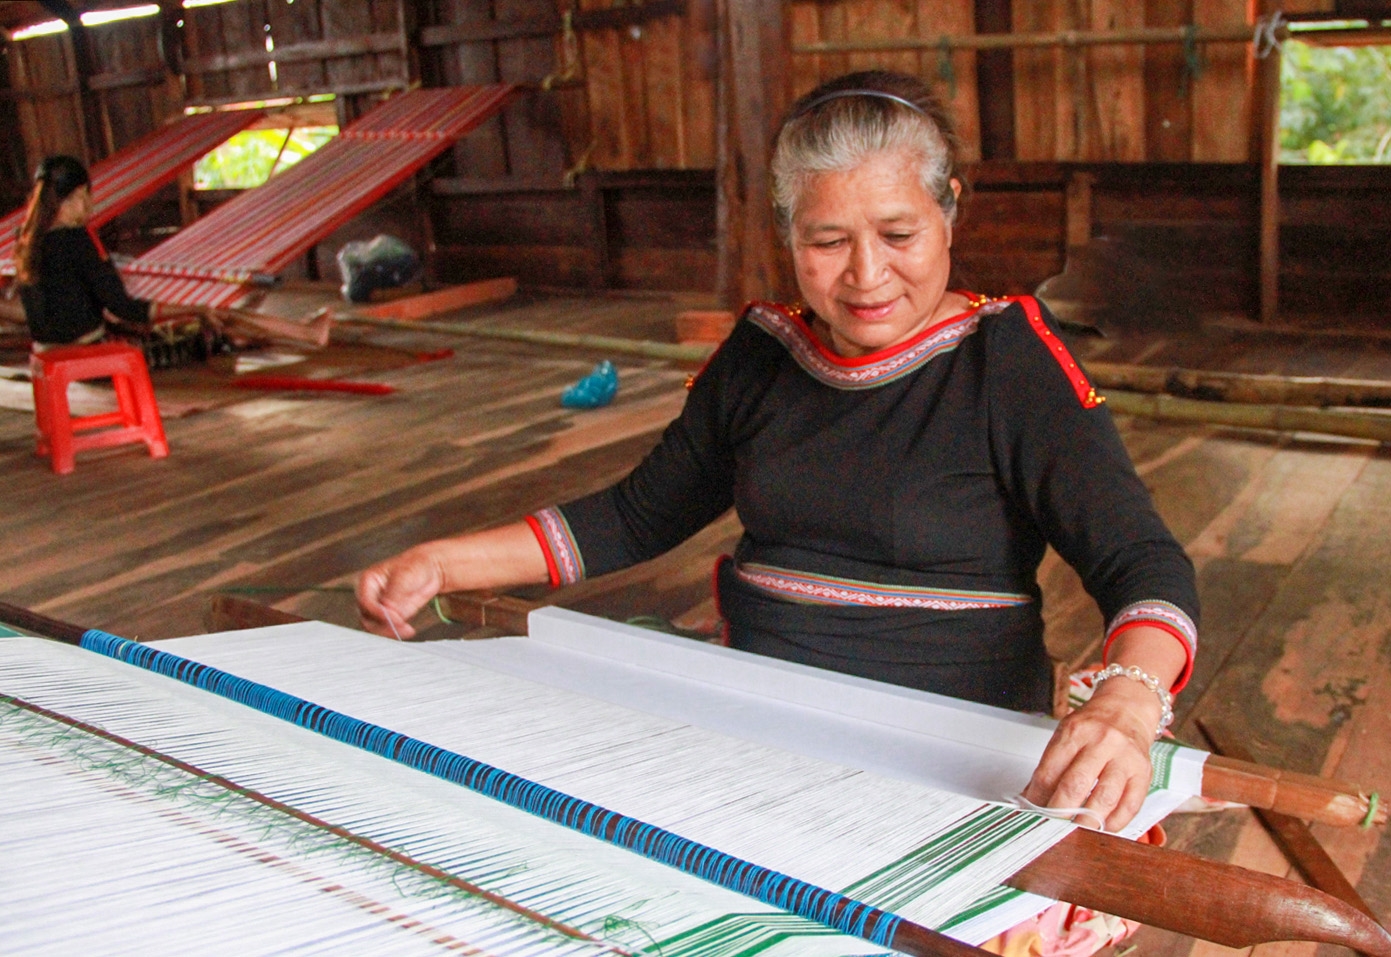 Tham gia Tổ hợp tác dệt thổ cẩm bà H’Rưm Hmok có nguồn thu trang trải cuộc sống